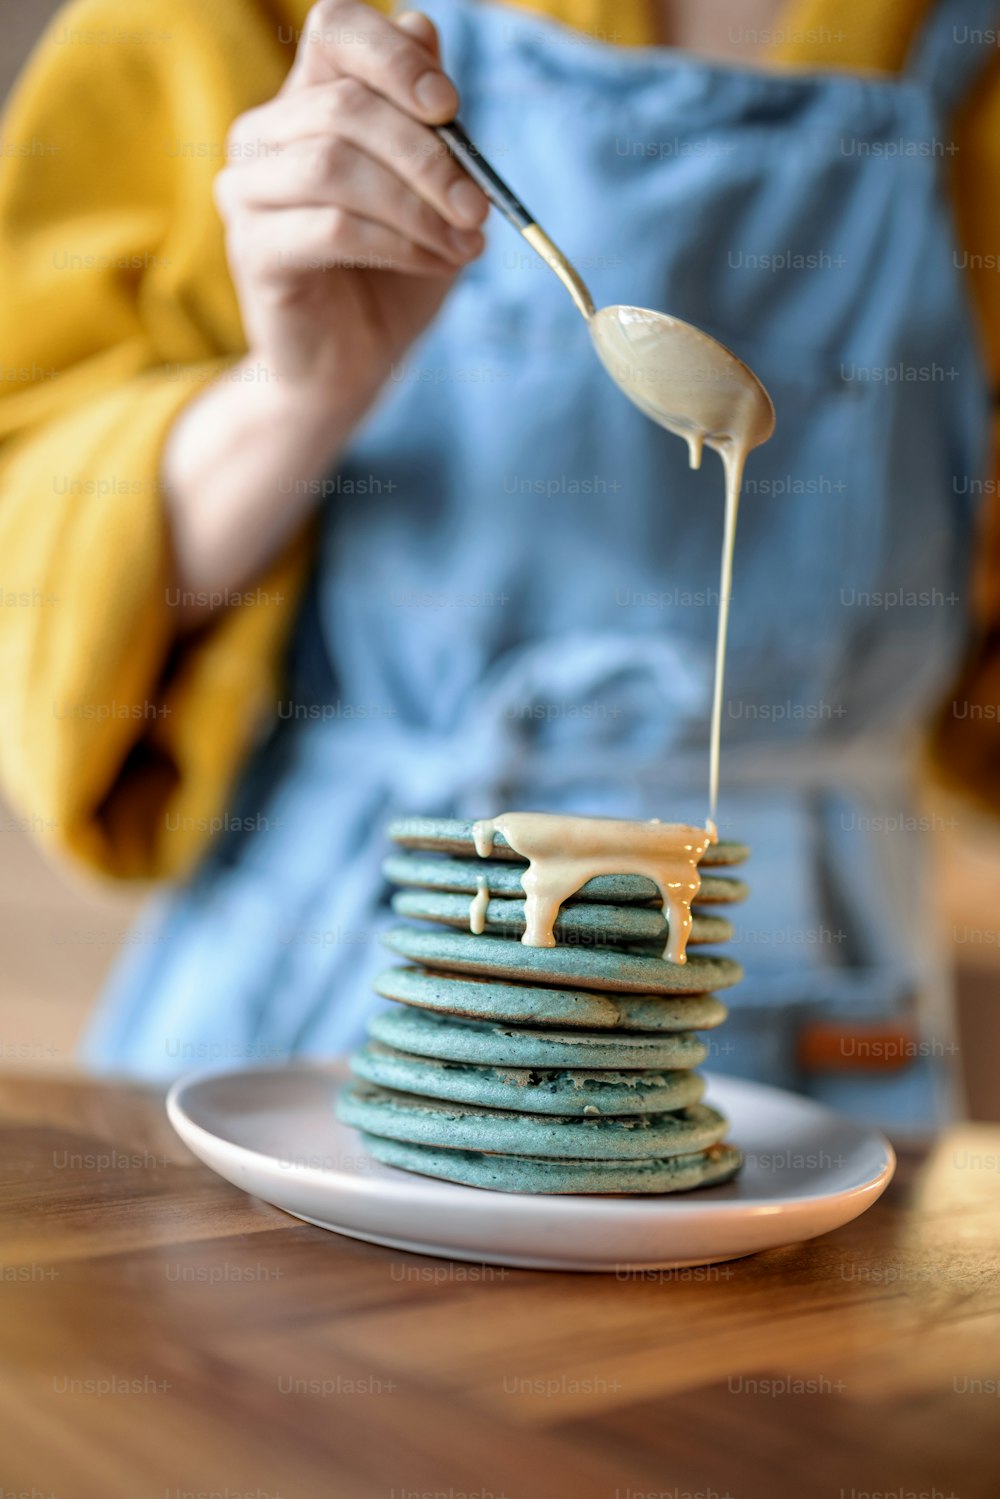 Femme en tablier bleu versant des crêpes bleues au souse au caramel sur une table en bois. Nourriture savoureuse faite maison. Célébration du Gras.